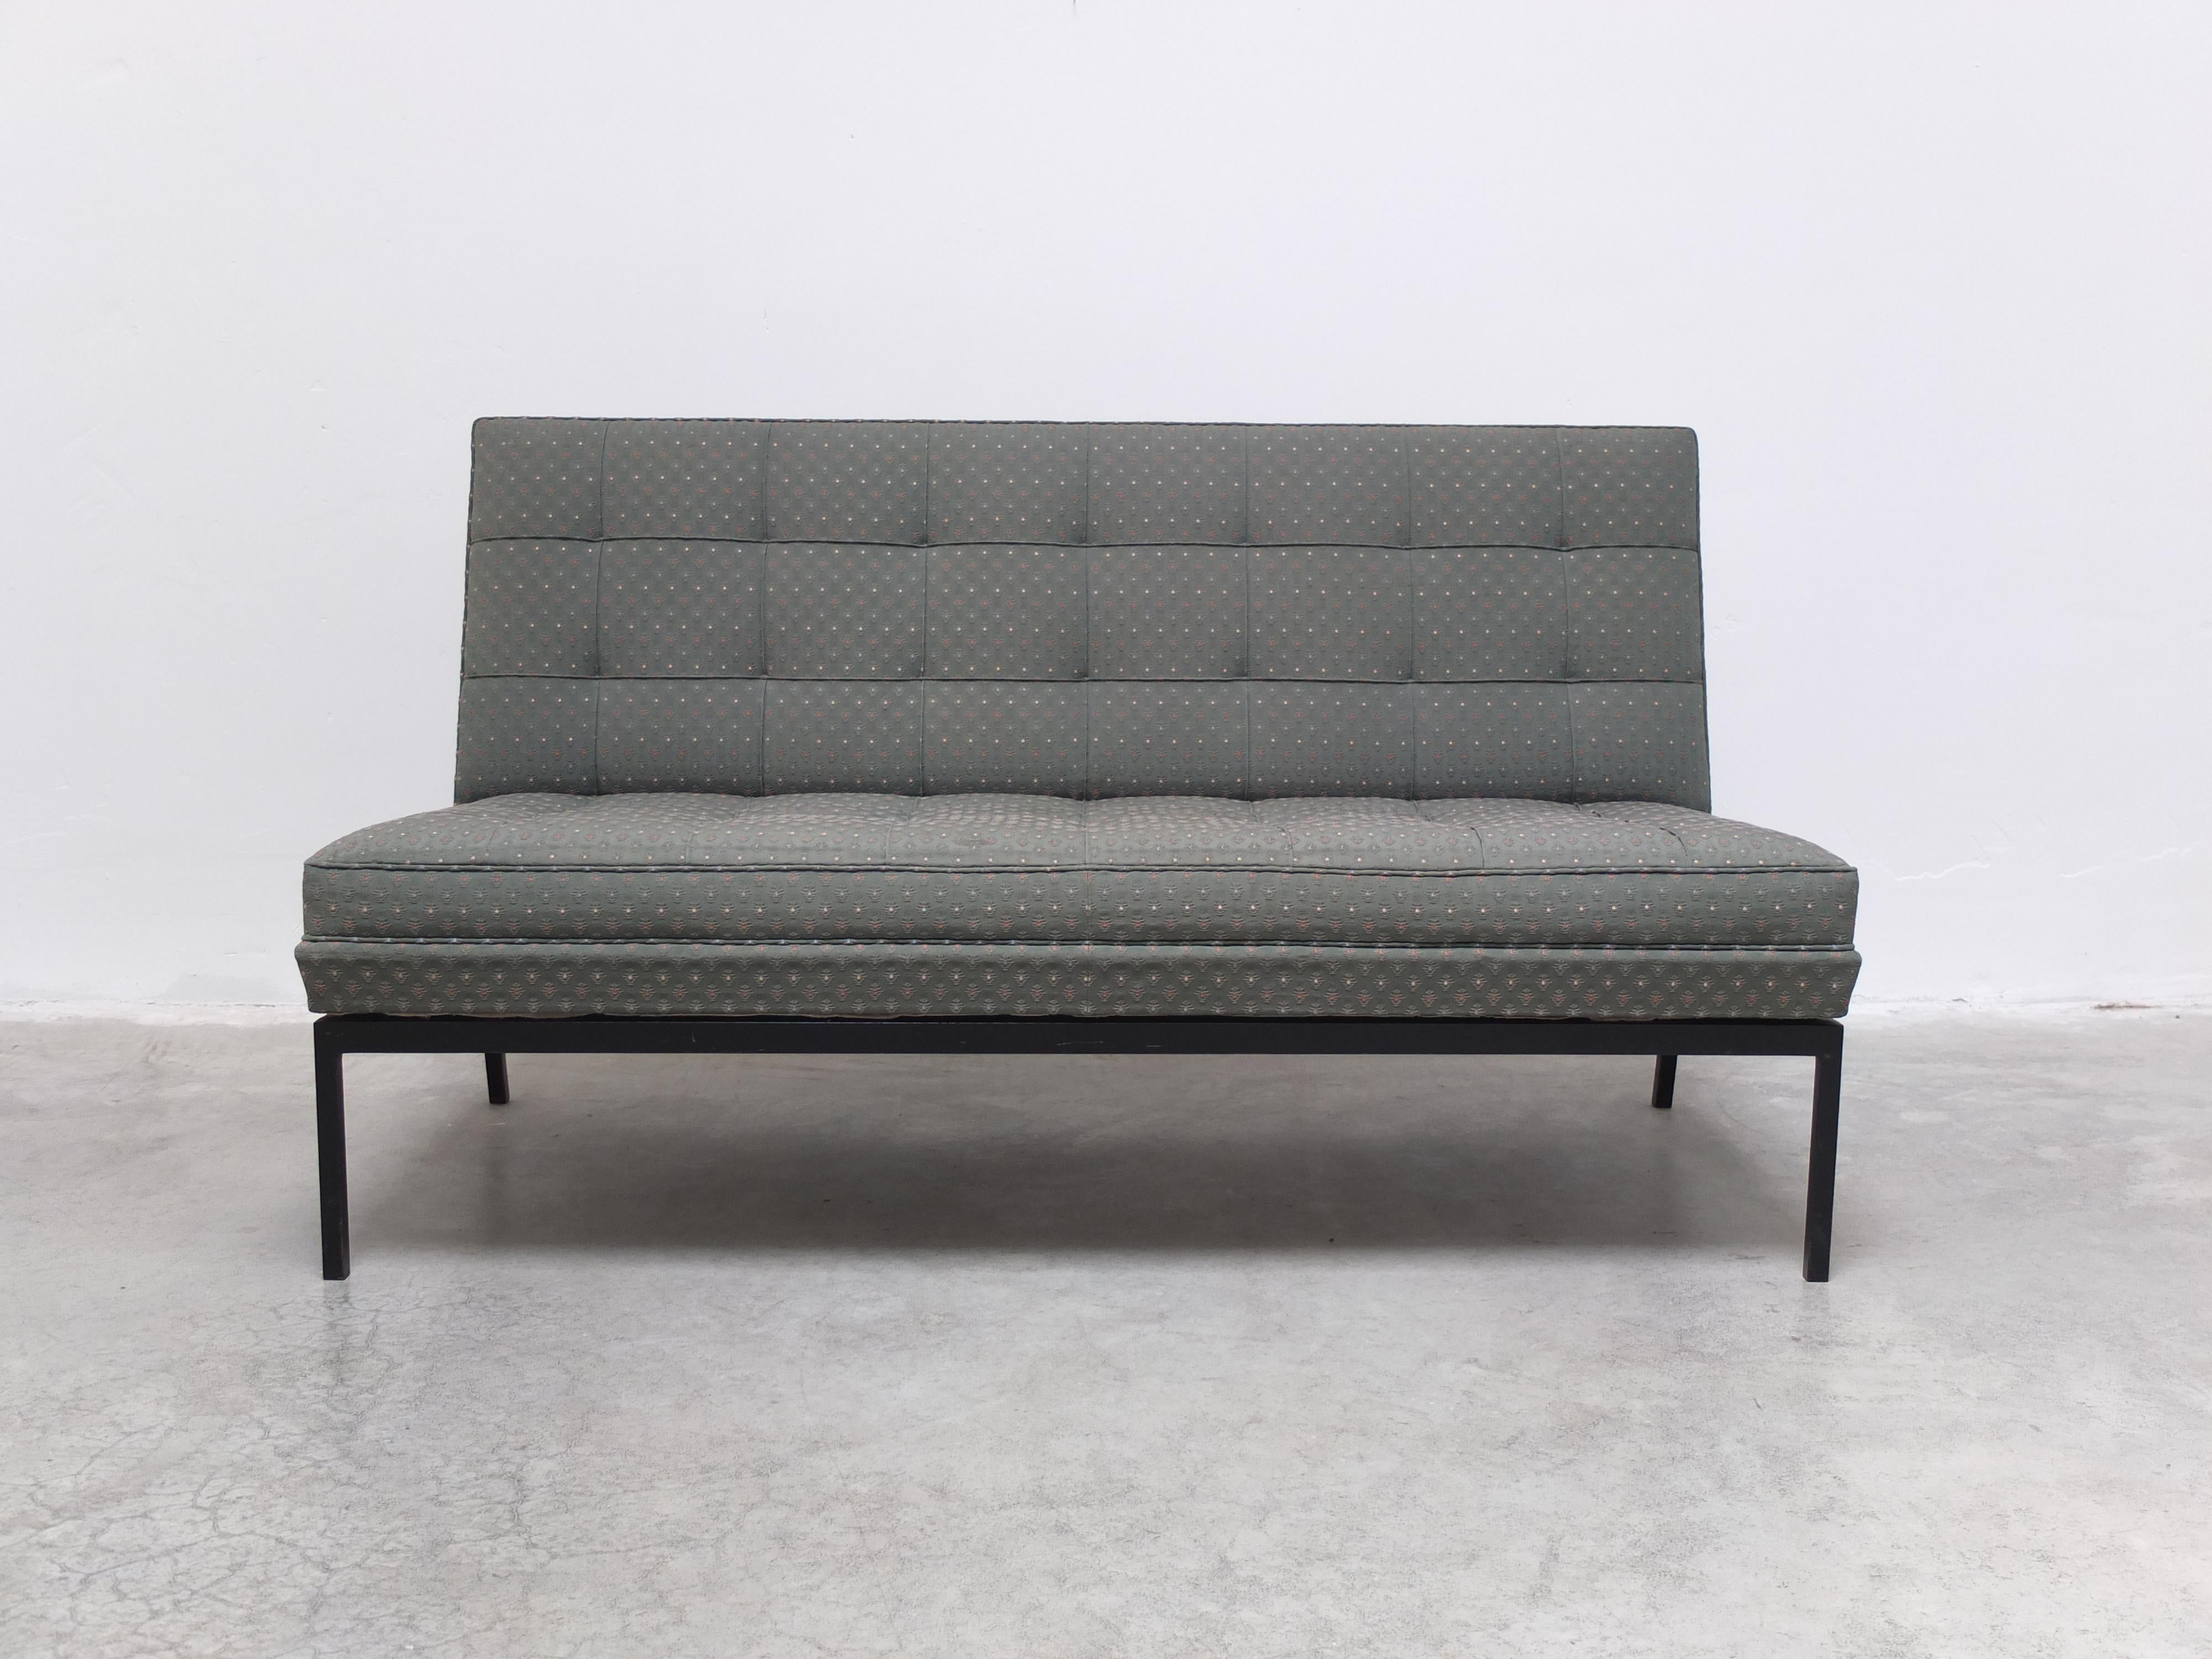 Seltenes 2-Sitzer-Sofa, entworfen von Florence Knoll Basset um 1955. Diese armlose Version heißt 'Model 66' oder 'Slipper' und besteht aus einem schlanken, schwarz lackierten Stahlgestell mit einem flippigen Stoffbezug. Dieses Sofa stammt aus einem